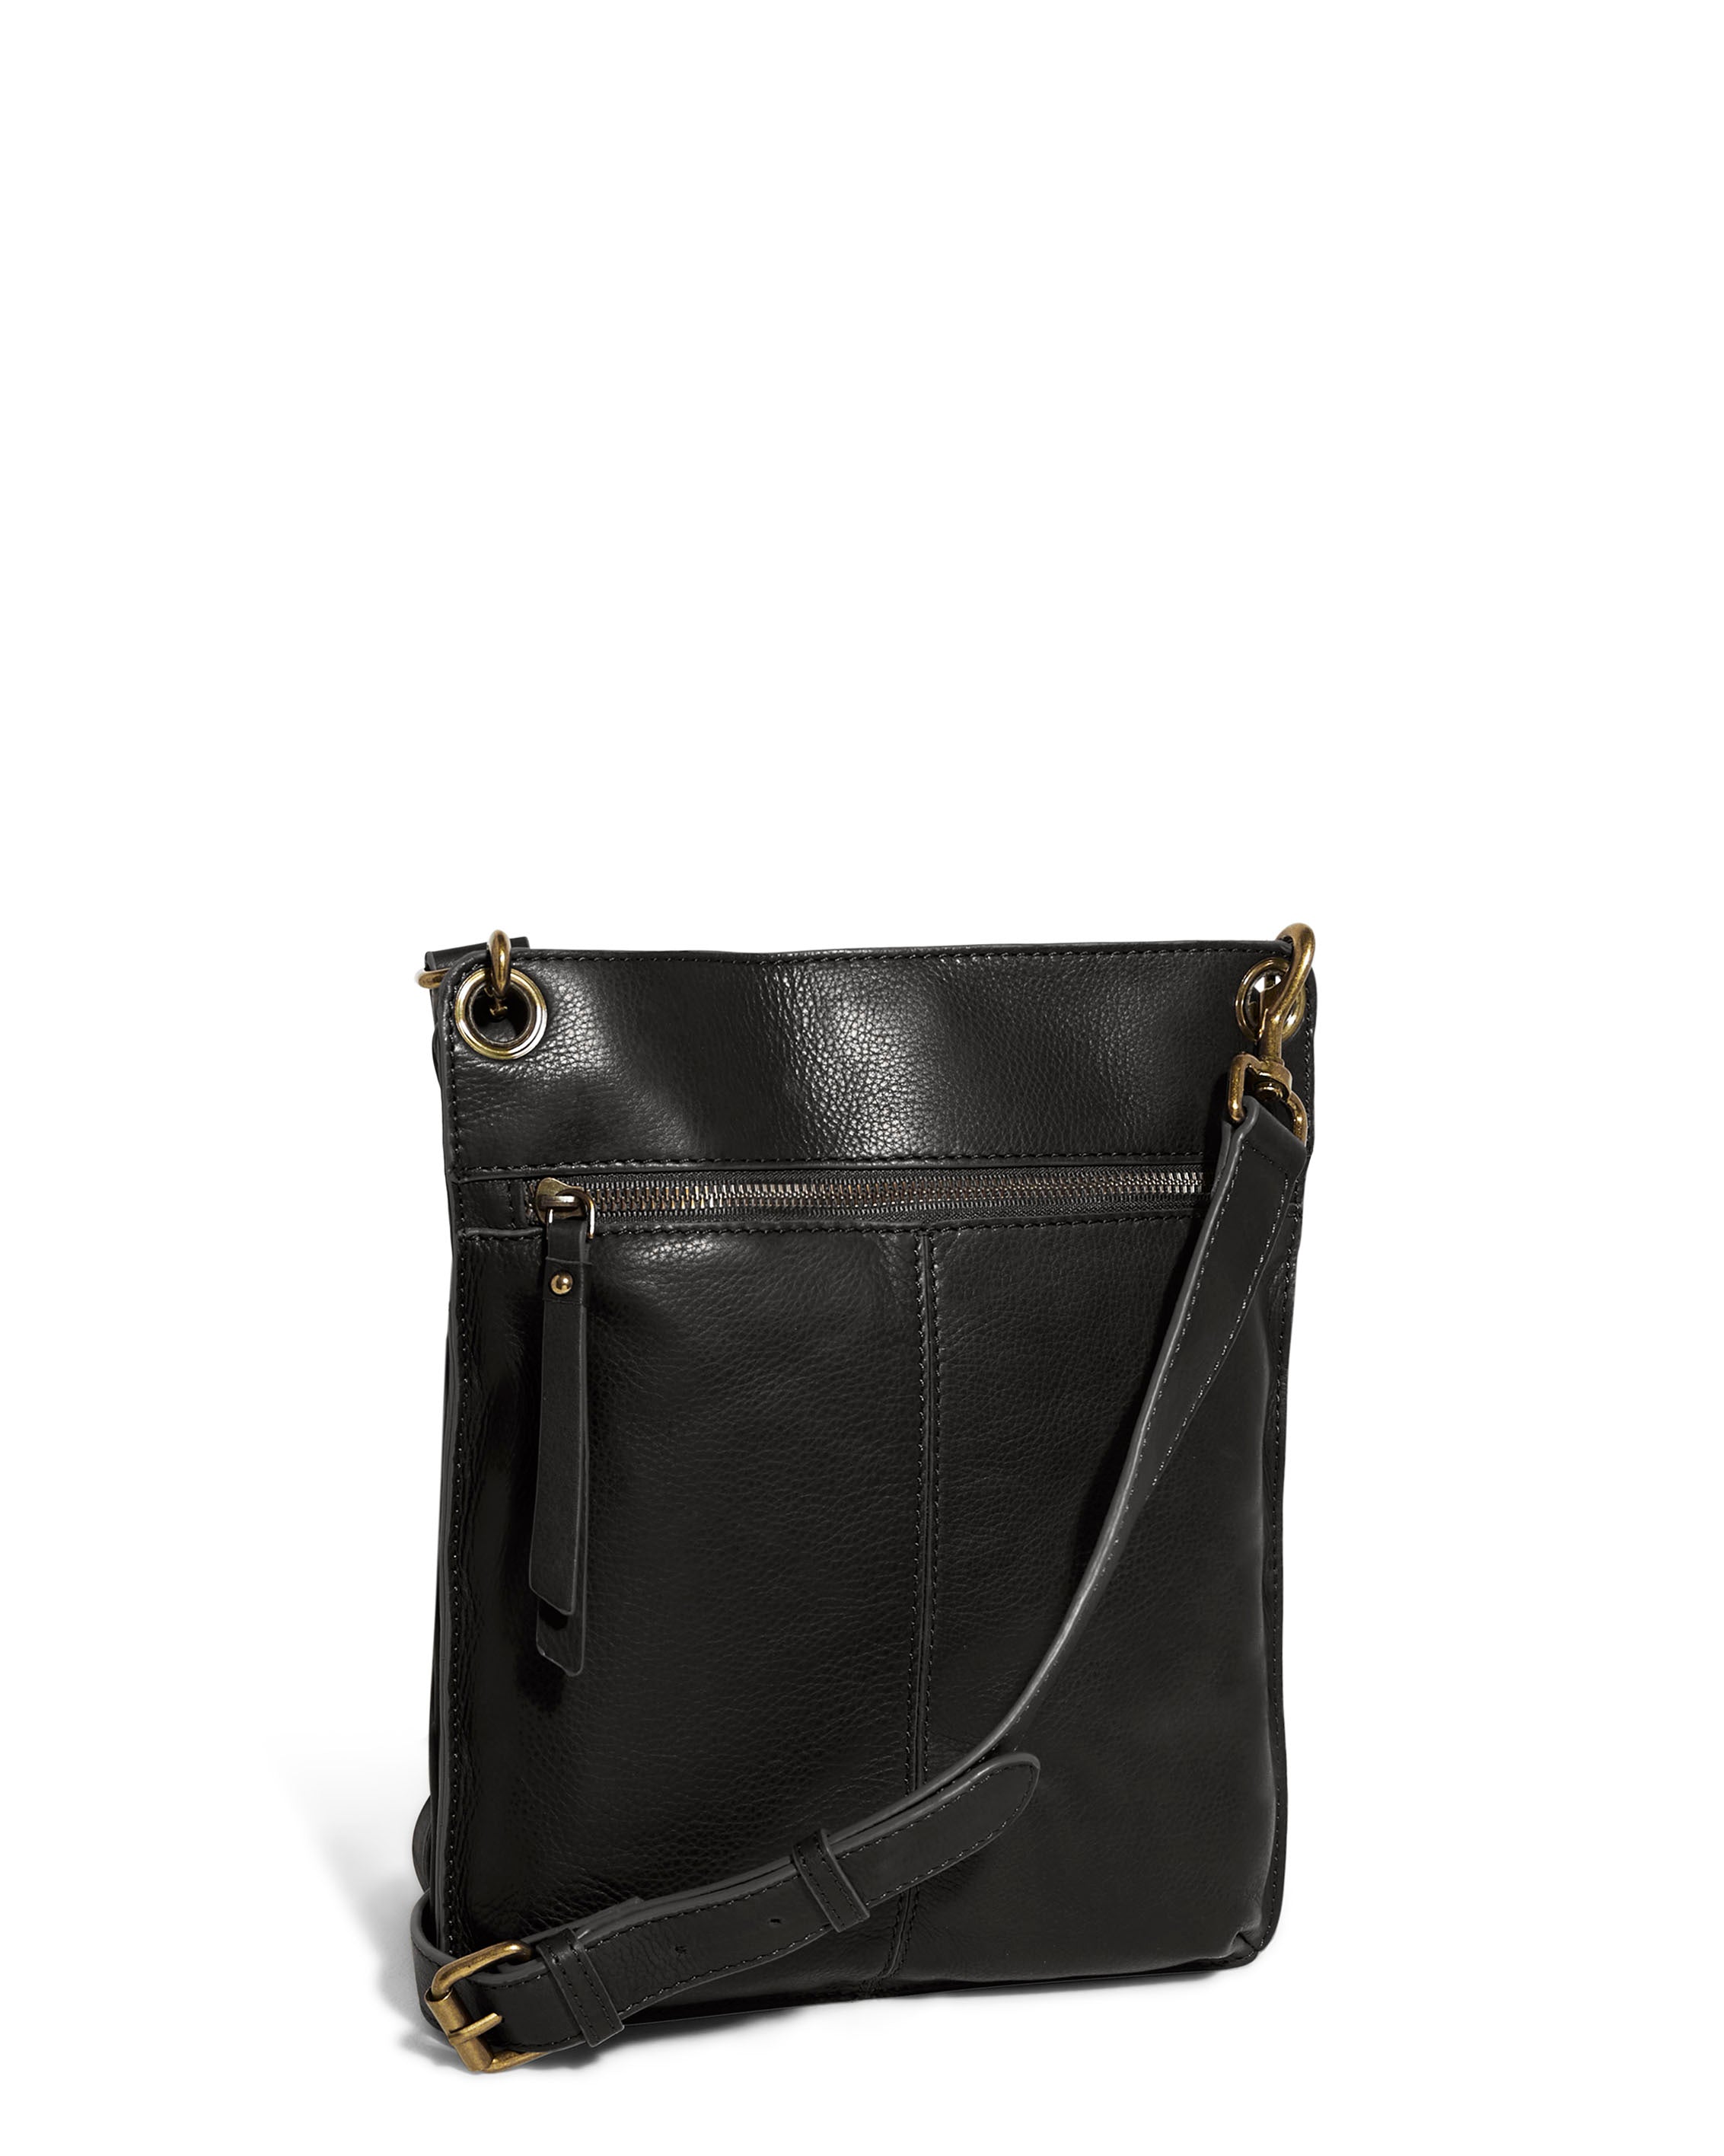 Leather Crossbody Multi Compartment Multi Tone Handbag | Leather crossbody,  Handbag, Leather